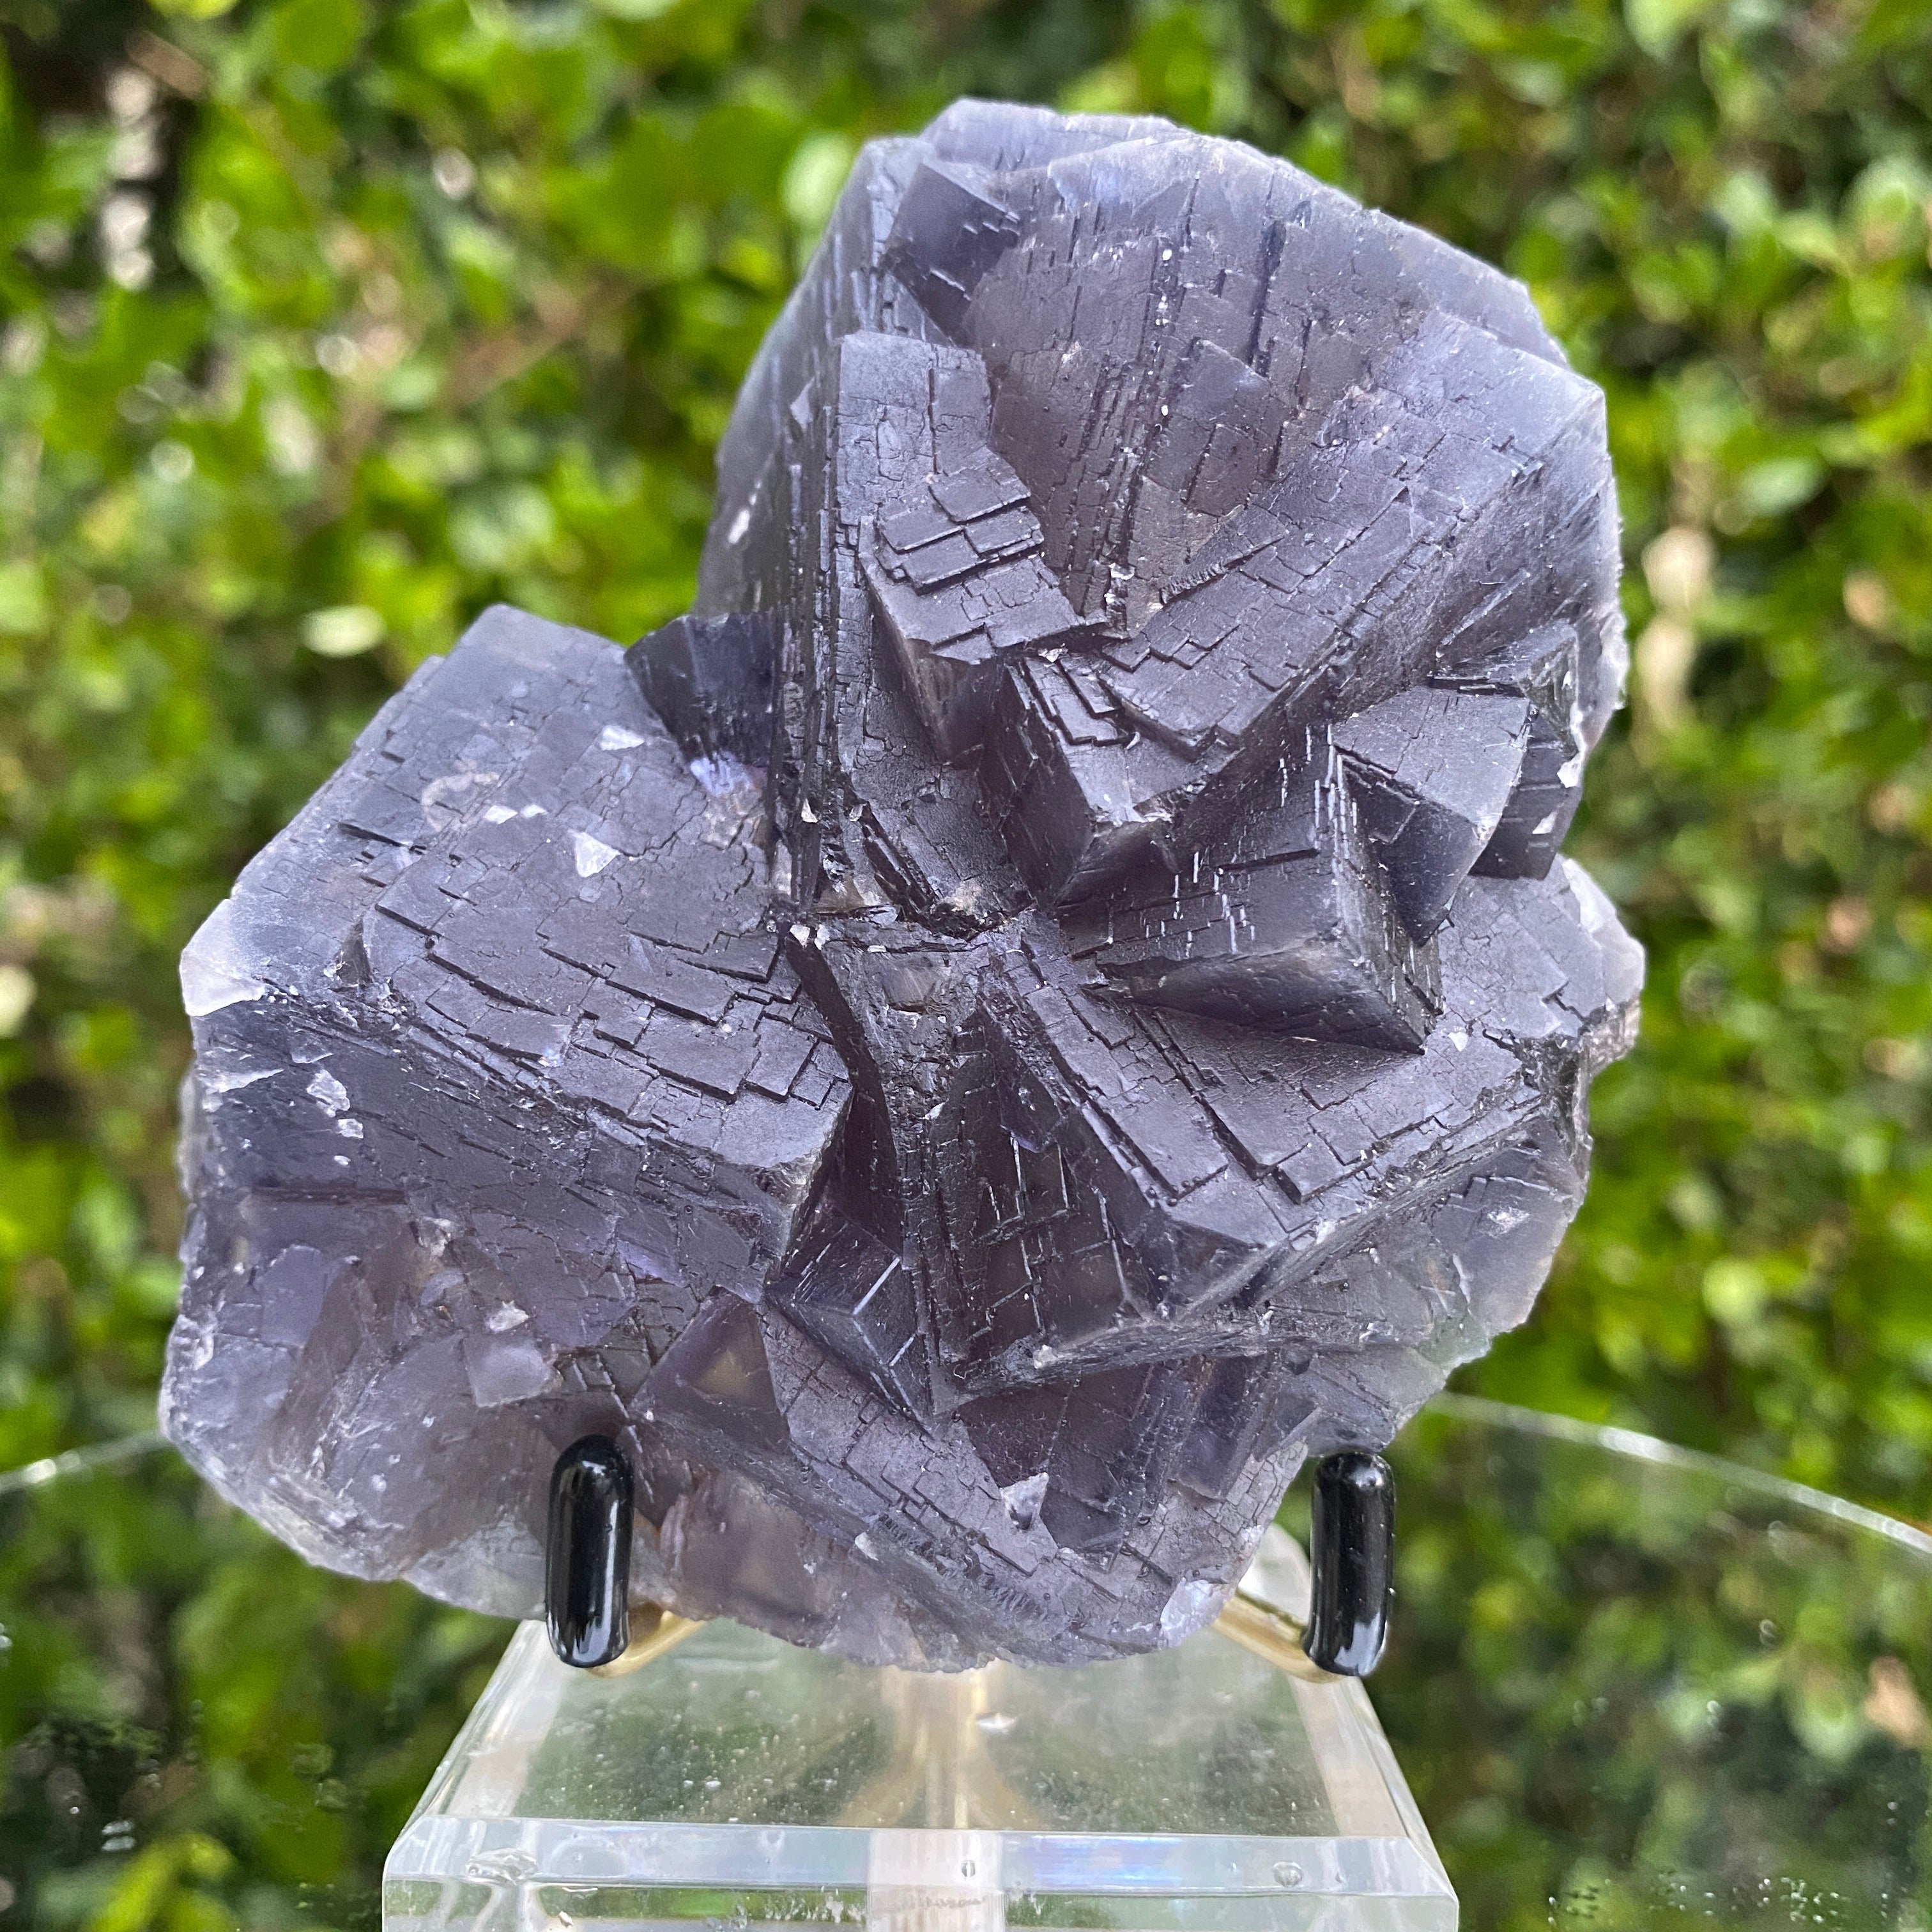 576g 12x9x6cm Veins and Detailed Very Dark Purple Fluorite from Balochistan, Pakistan